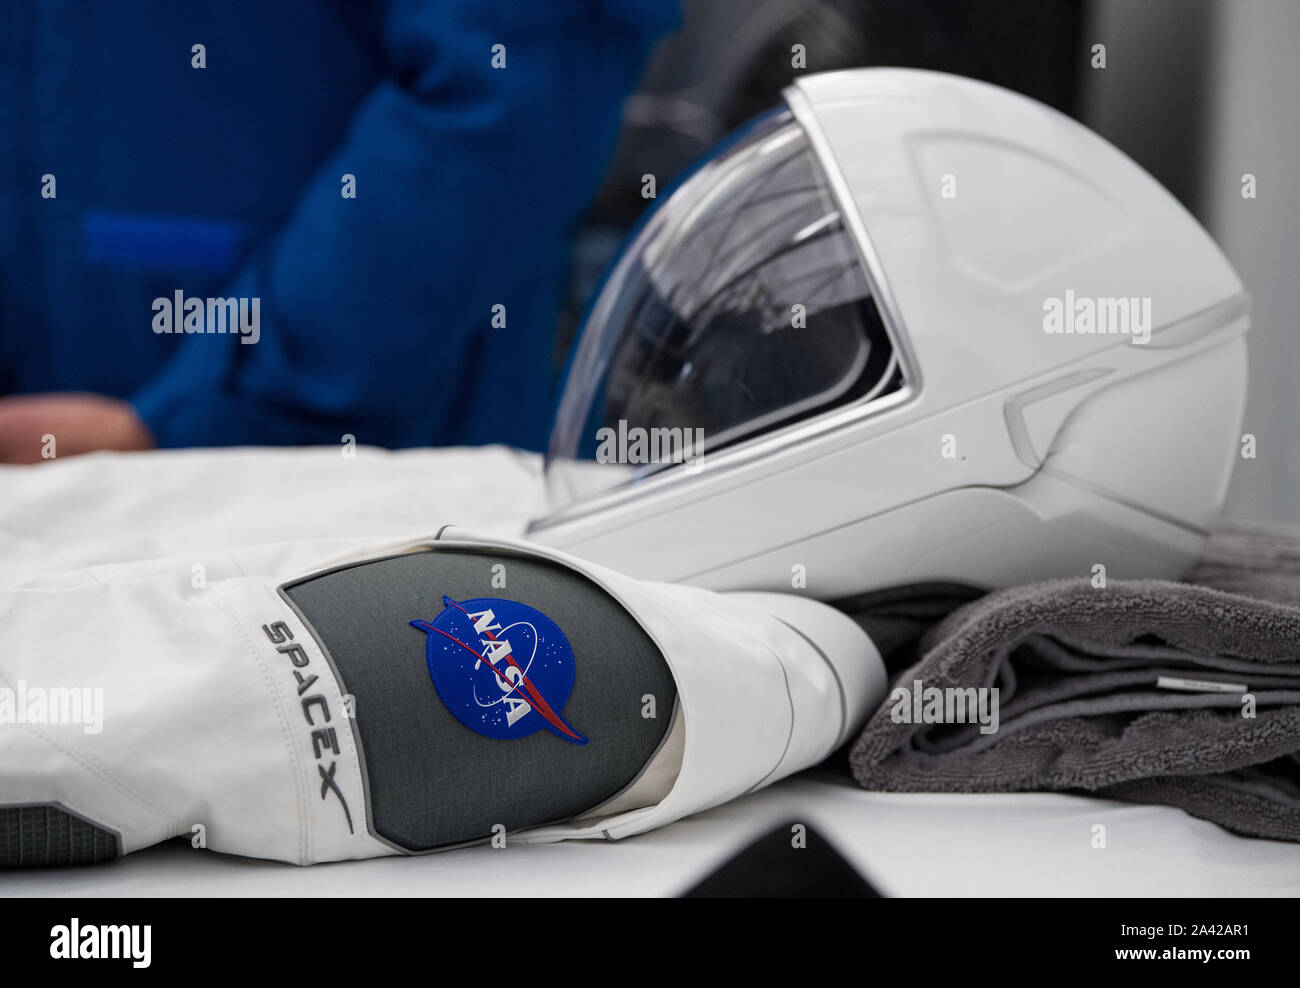 Hawthorne, Estados Unidos. 11 Oct, 2019. Una vista de uno de los trajes de SpaceX que se utilizará para la demostración-2 en la Sede SpaceX lanzamiento el 10 de octubre de 2019, en Hawthorne, CA. Foto de la NASA por Aubrey Gemignani/UPI Crédito: UPI/Alamy Live News Foto de stock